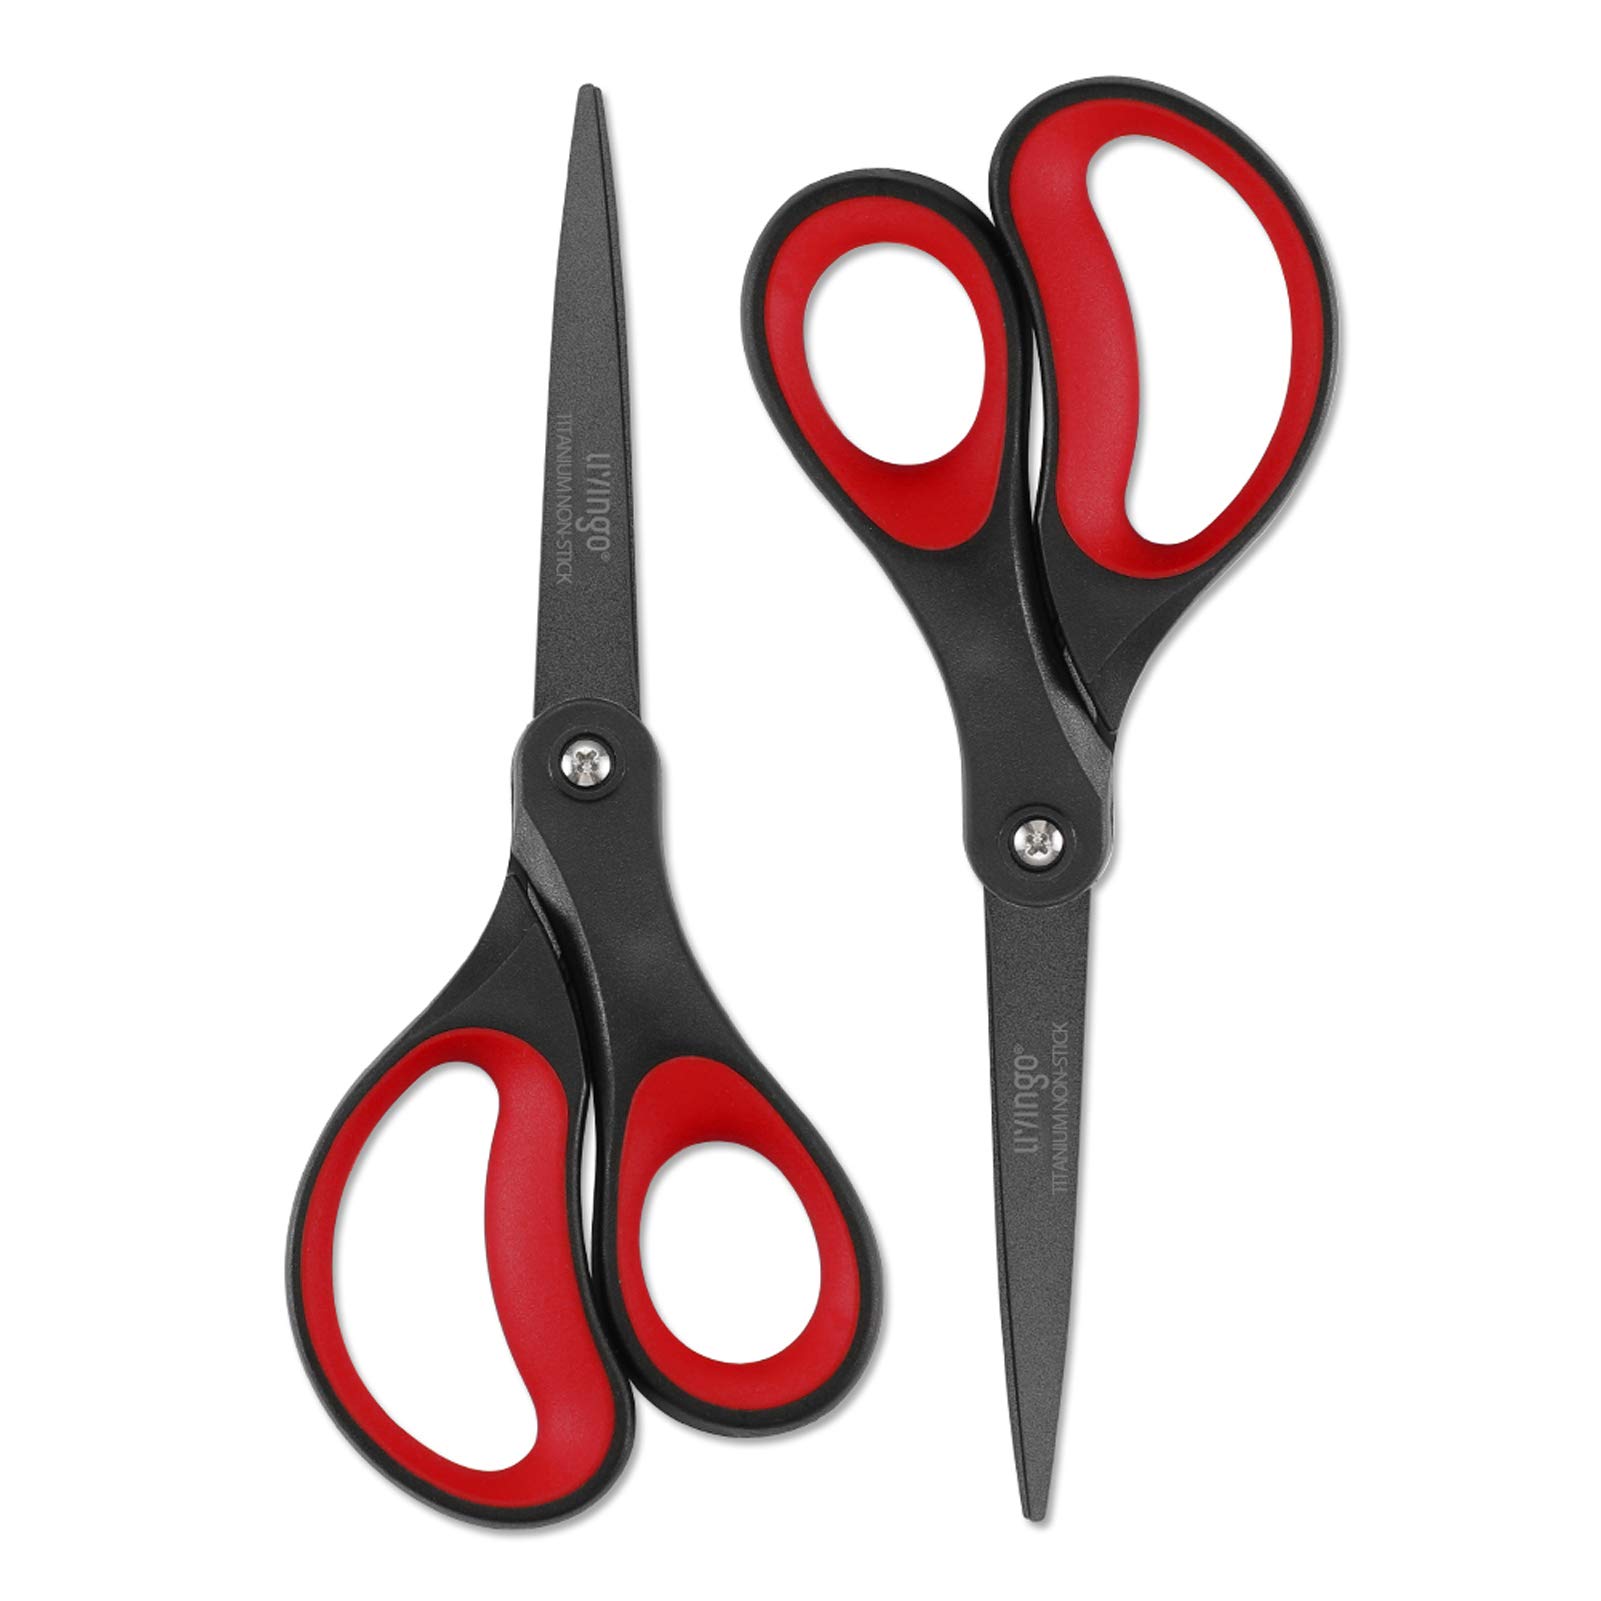 LIVINGO Scissors 7 Inch All Purpose Titanium Scissors Bulk 2 Pack,  Left/Right Handed, Forged Stainless Steel Sharp Blade Shears Multipurpose  for Home